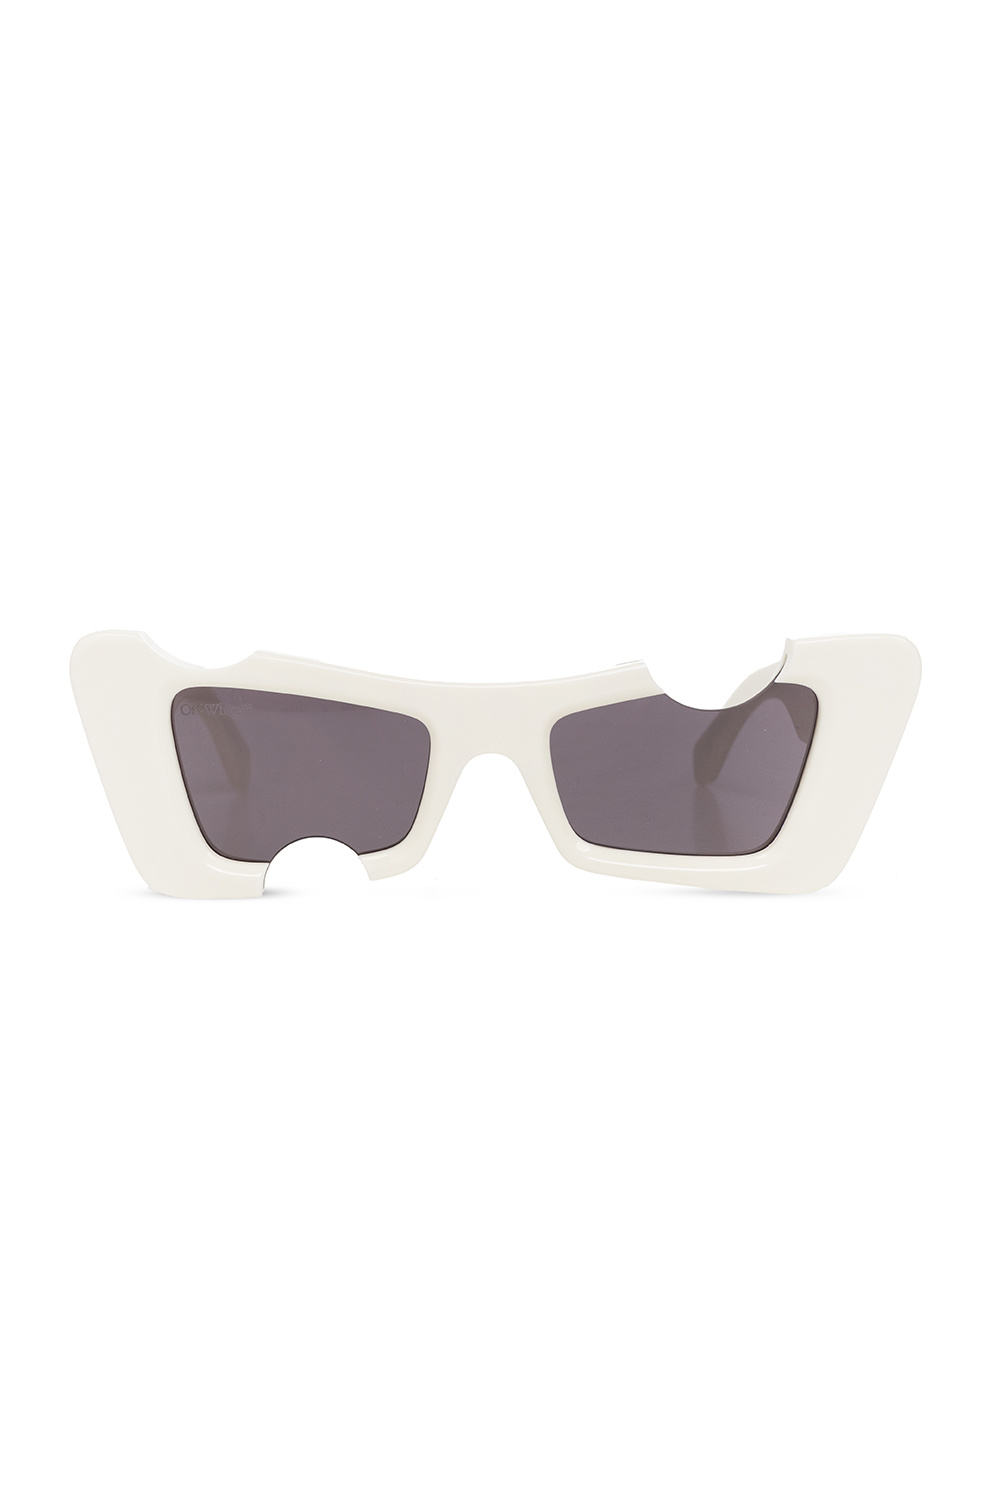 Off-White 'Cannes' sunglasses | Men's Accessorie | Vitkac